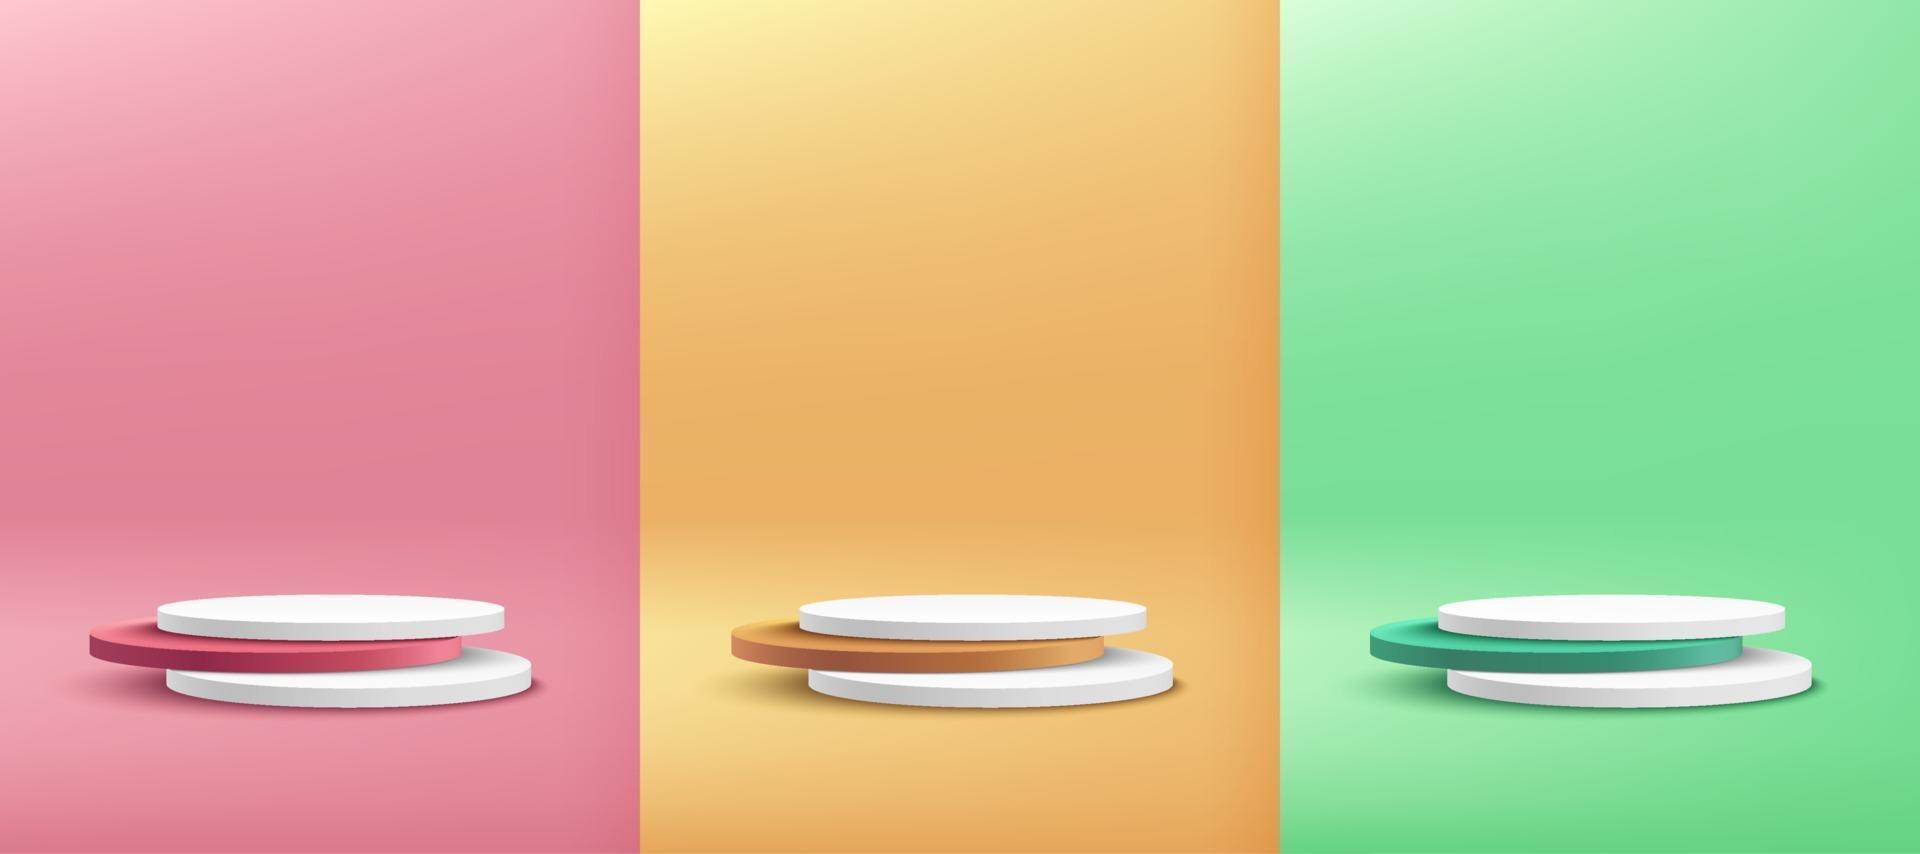 conjunto de exibição de pódio de pedestal de cilindro redondo branco, verde, amarelo e rosa no fundo da sala vazia. vetor moderno abstrato que renderiza a forma 3d para apresentação de produtos cosméticos. cena minimalista pastel.